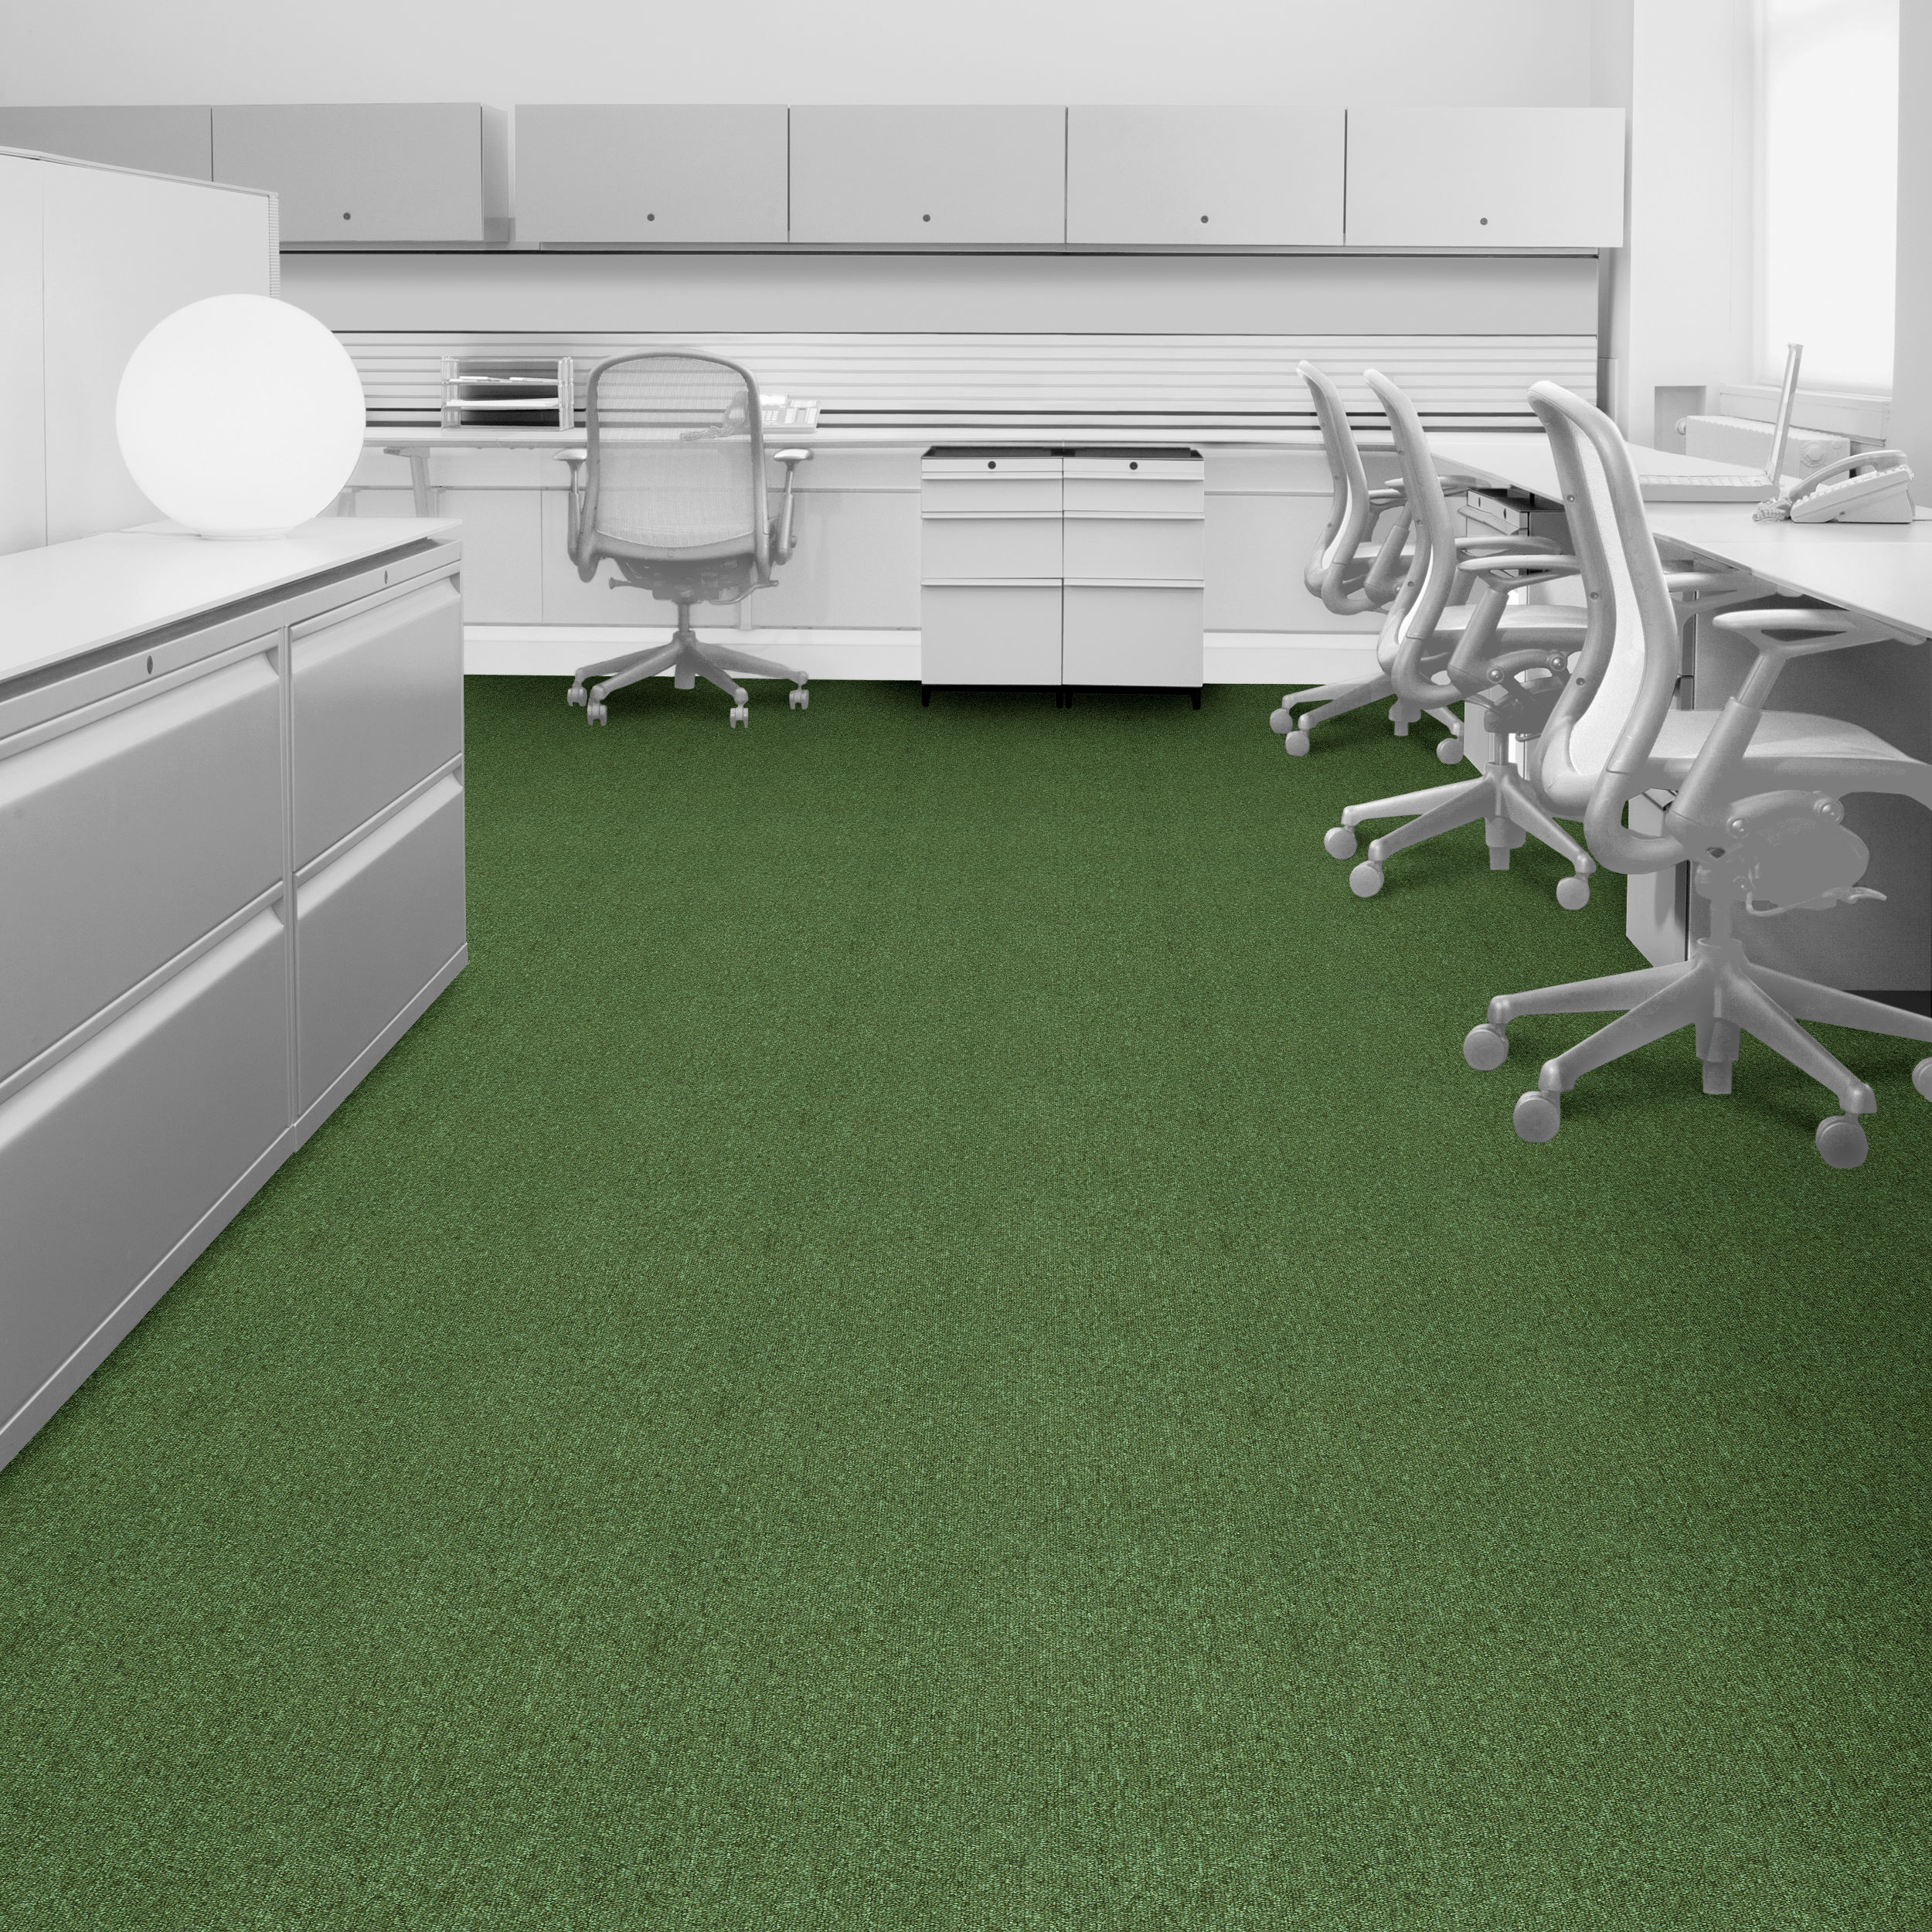 Interface Heuga 580 Carpet Tile - Kiwi variation in office setting.